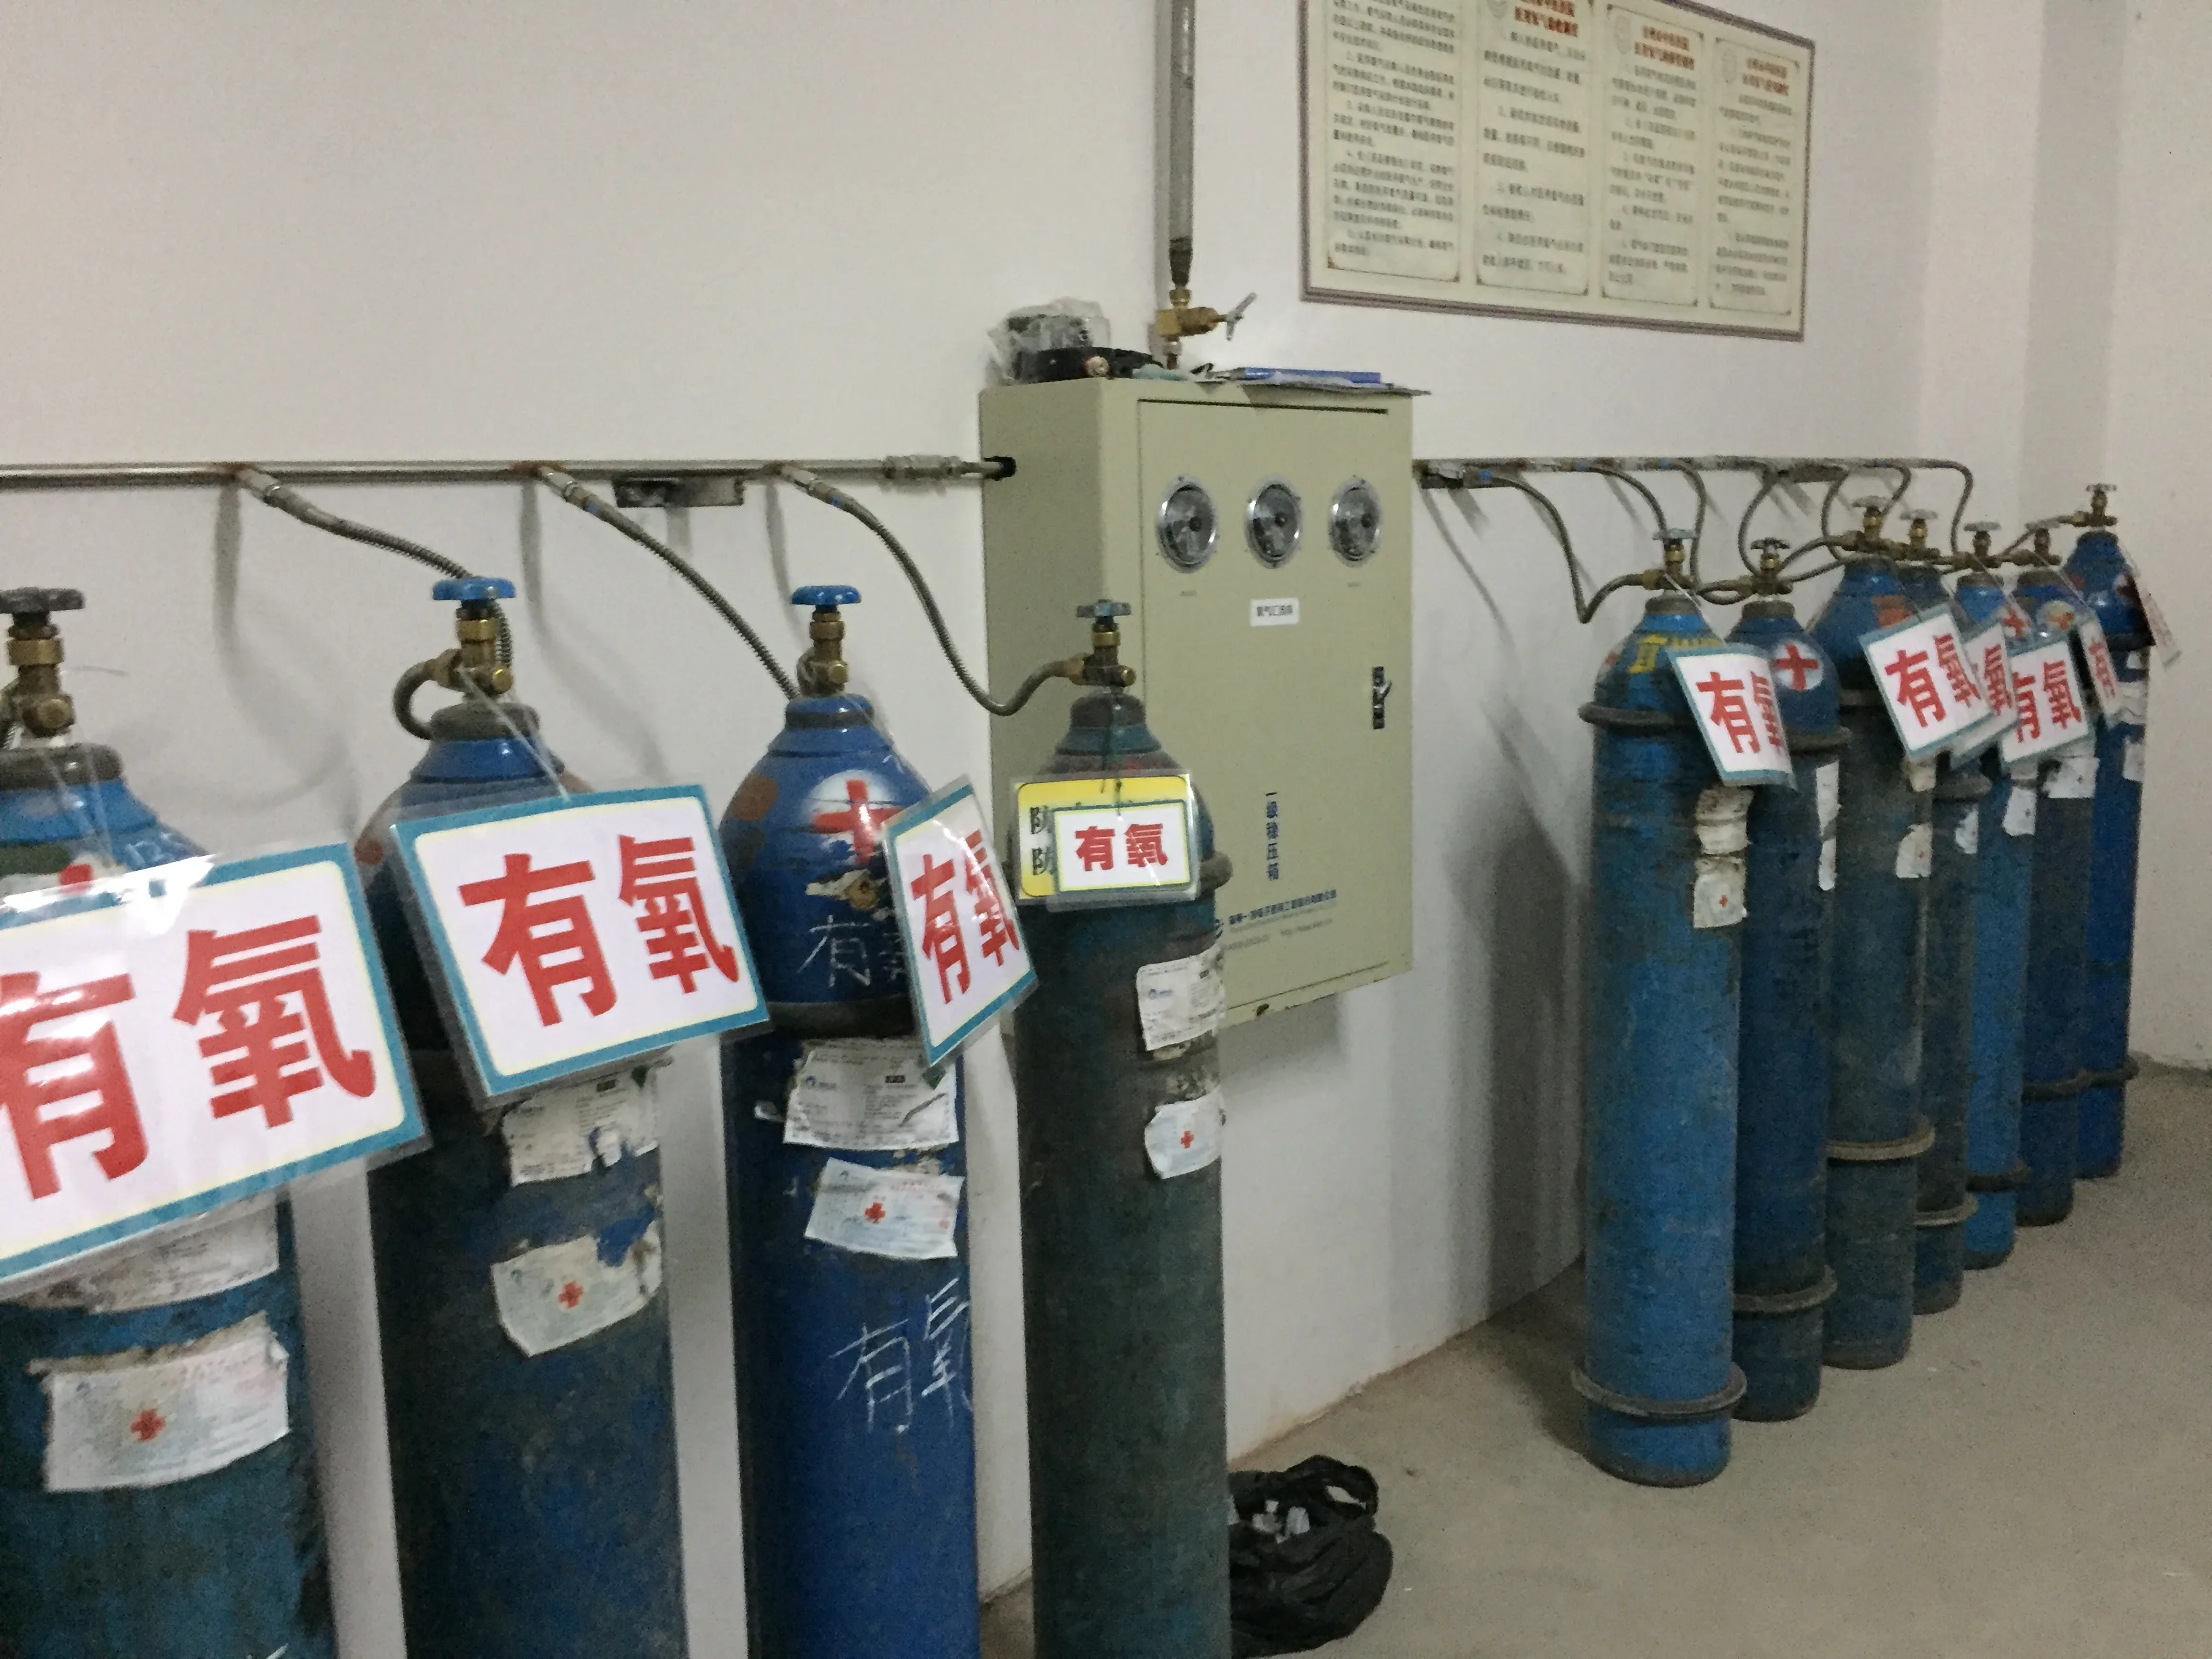 Медицинский и промышленный кислородный концентратор, экономичная кислородная газовая установка PSA